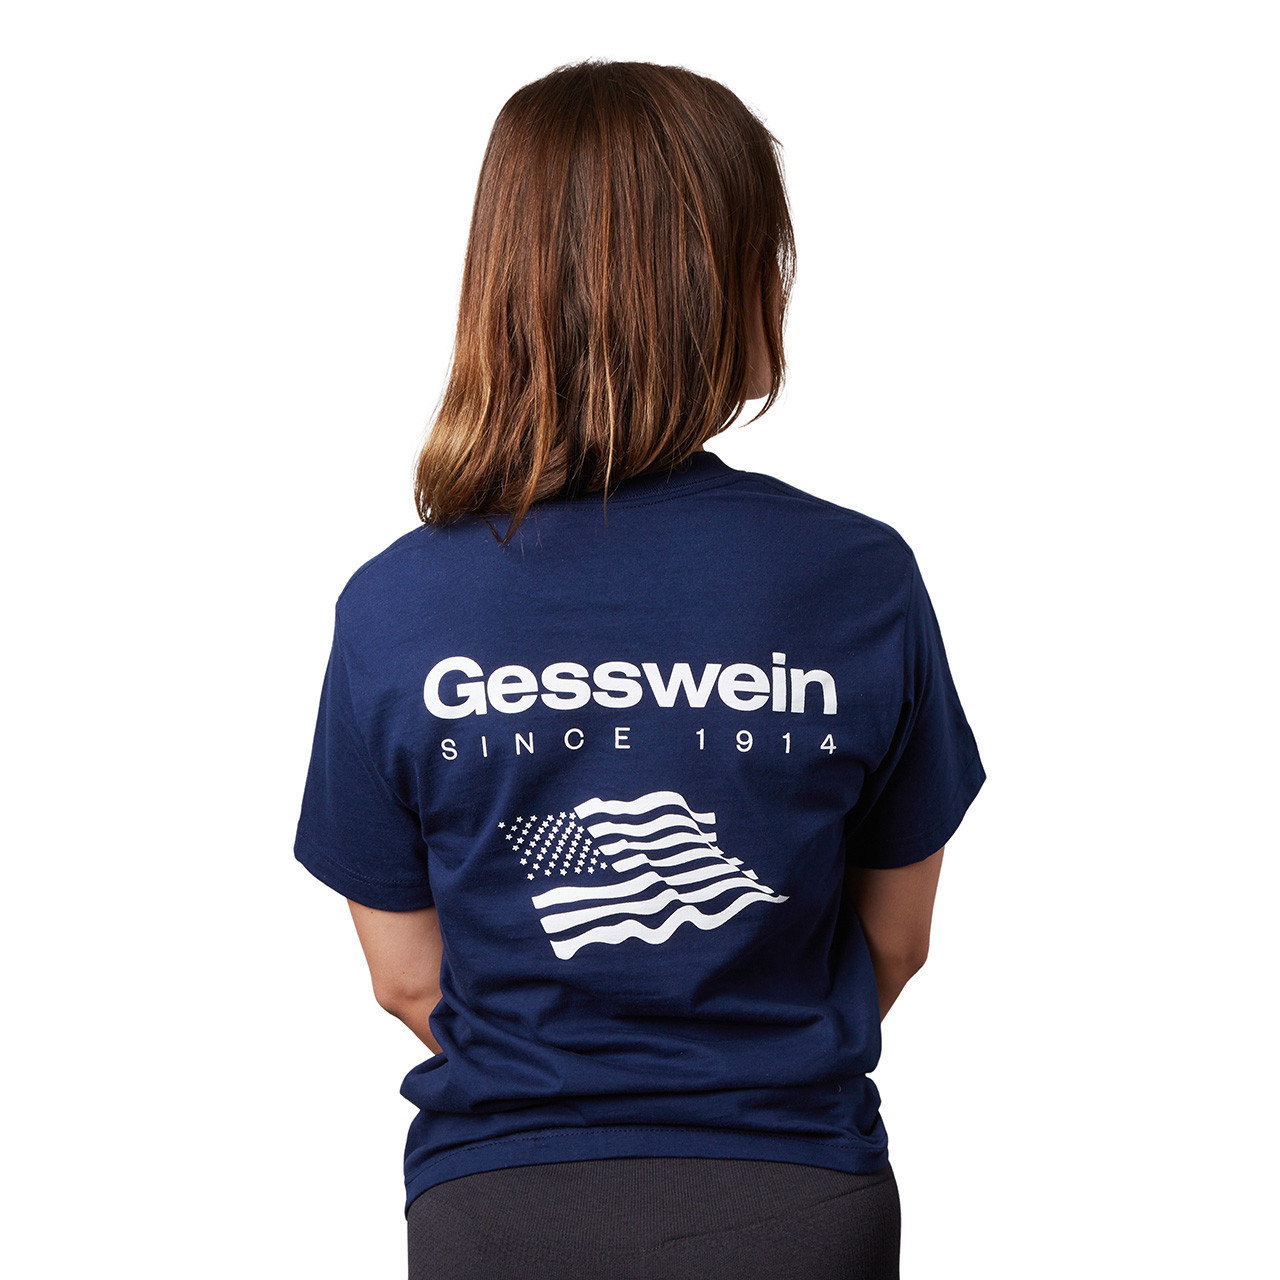 Gesswein USA T-Shirt - Small